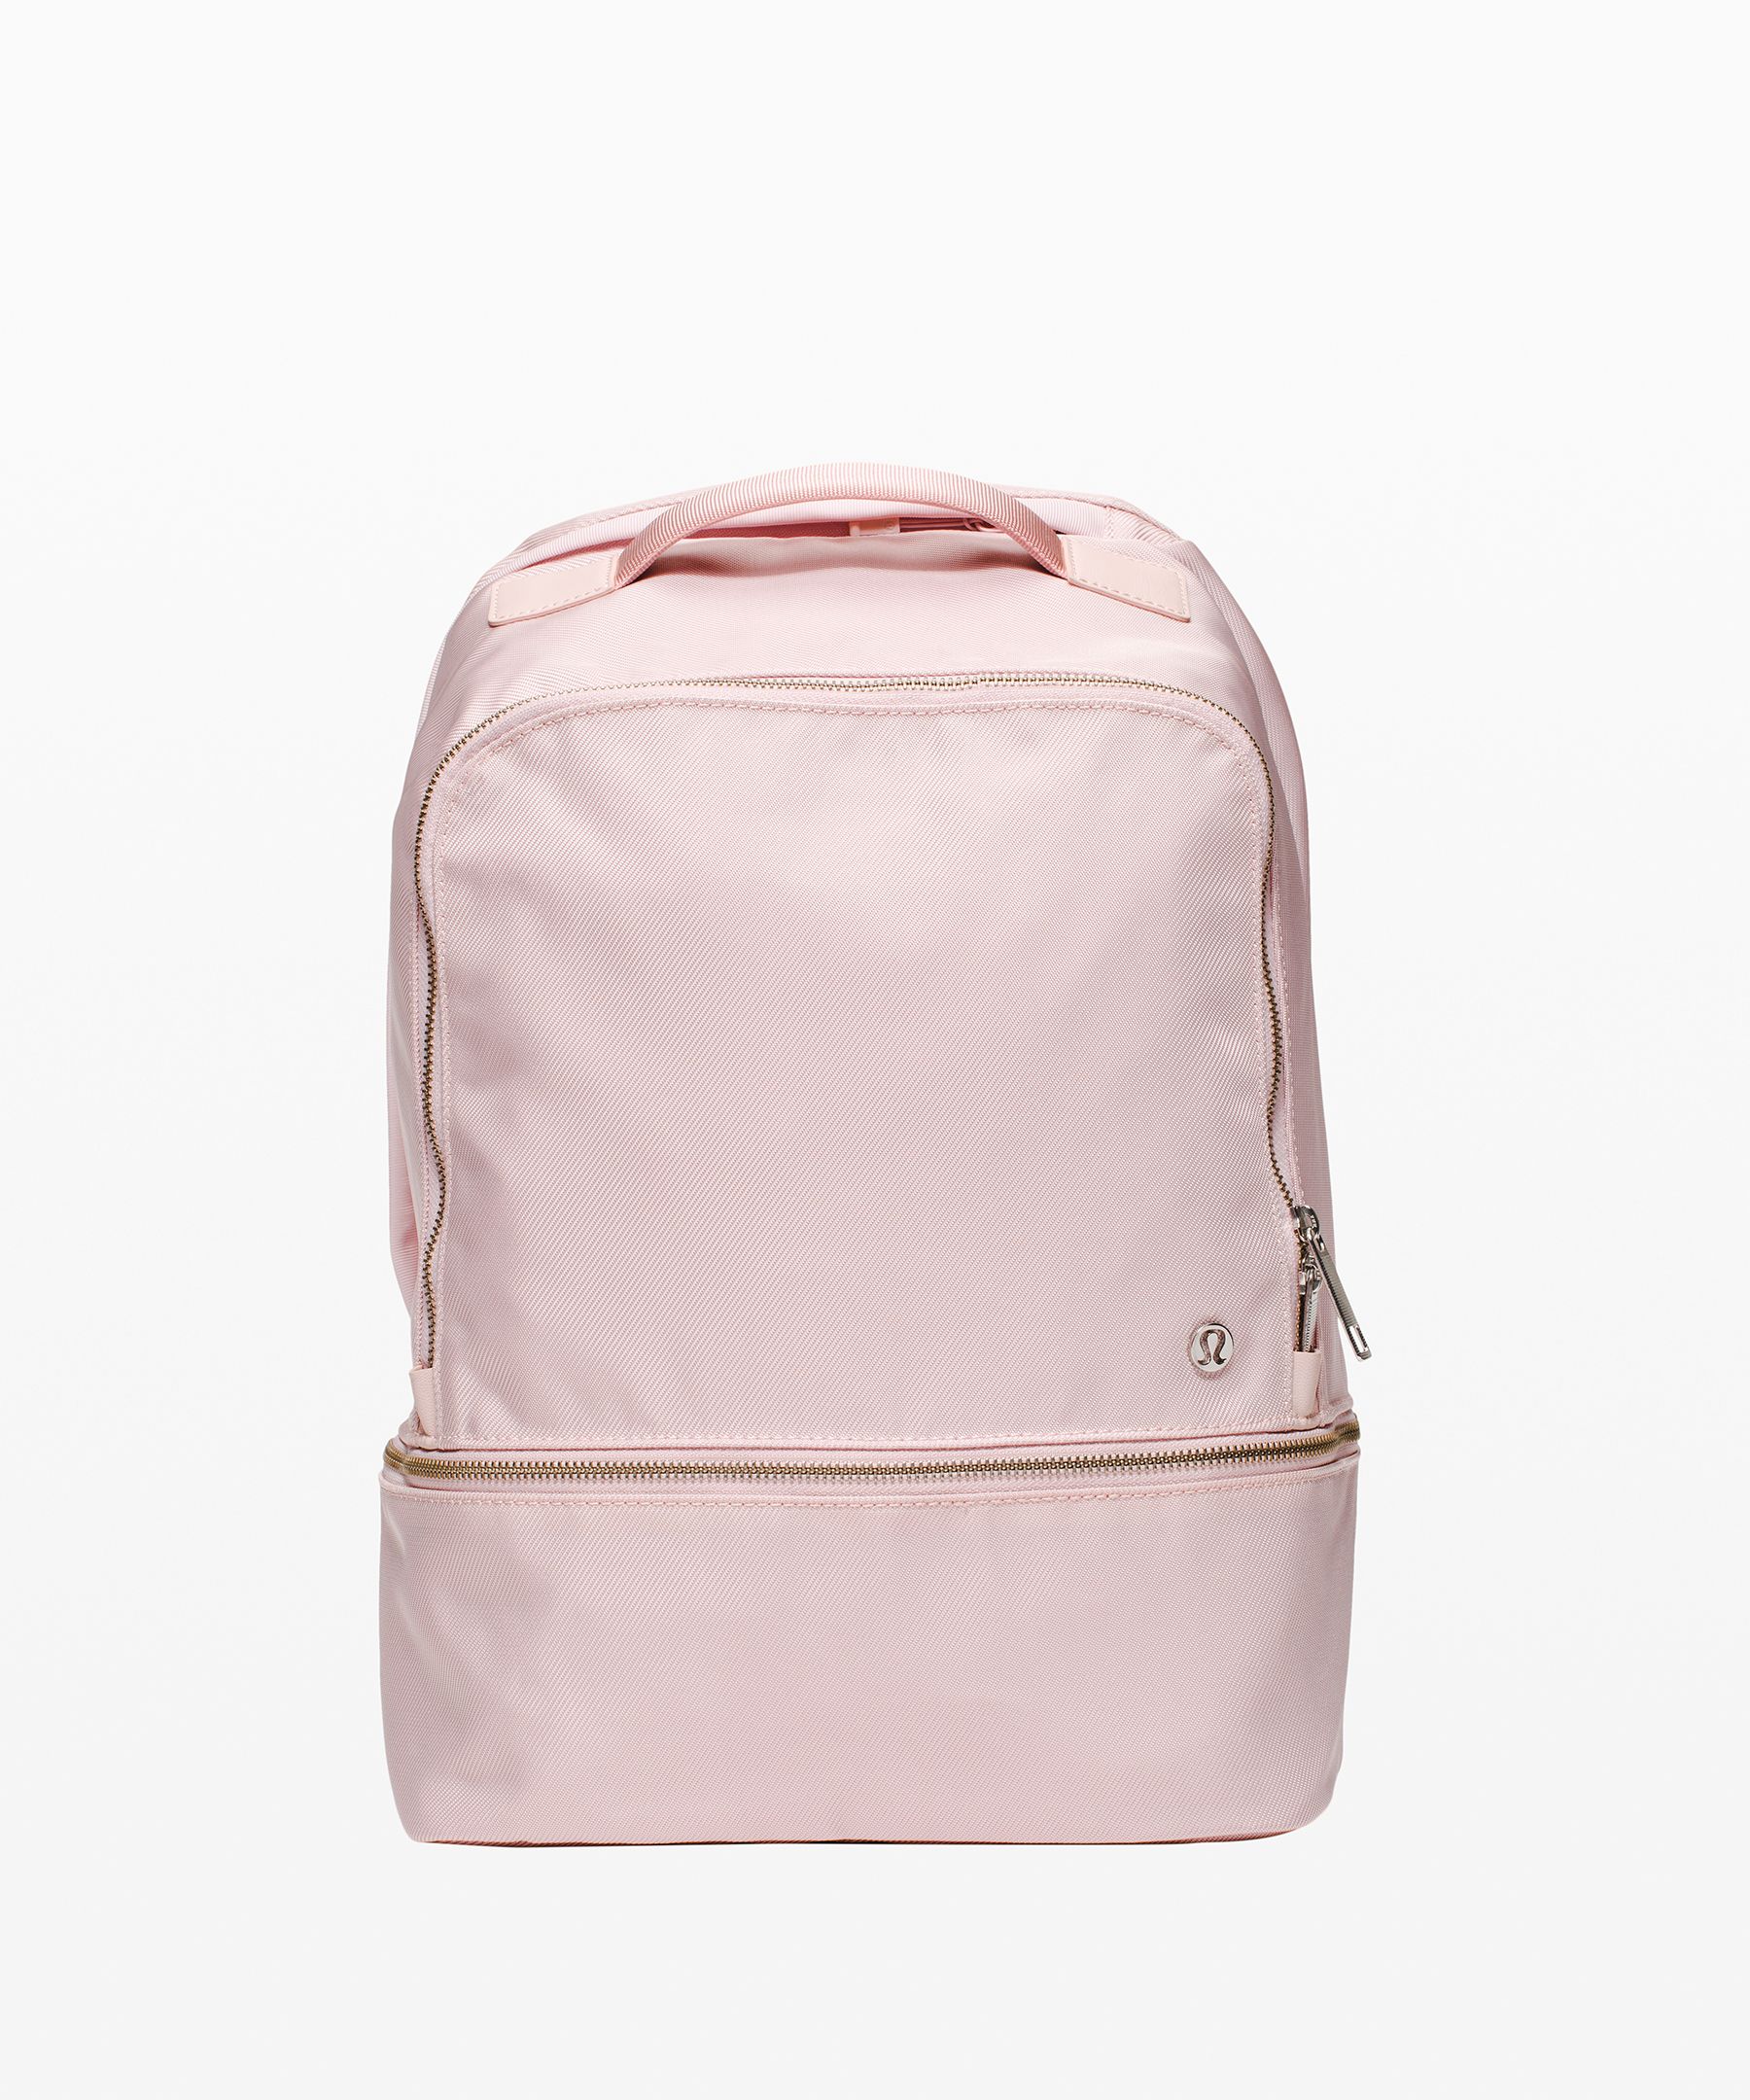 Lululemon City Adventurer Backpack 17l In Pink